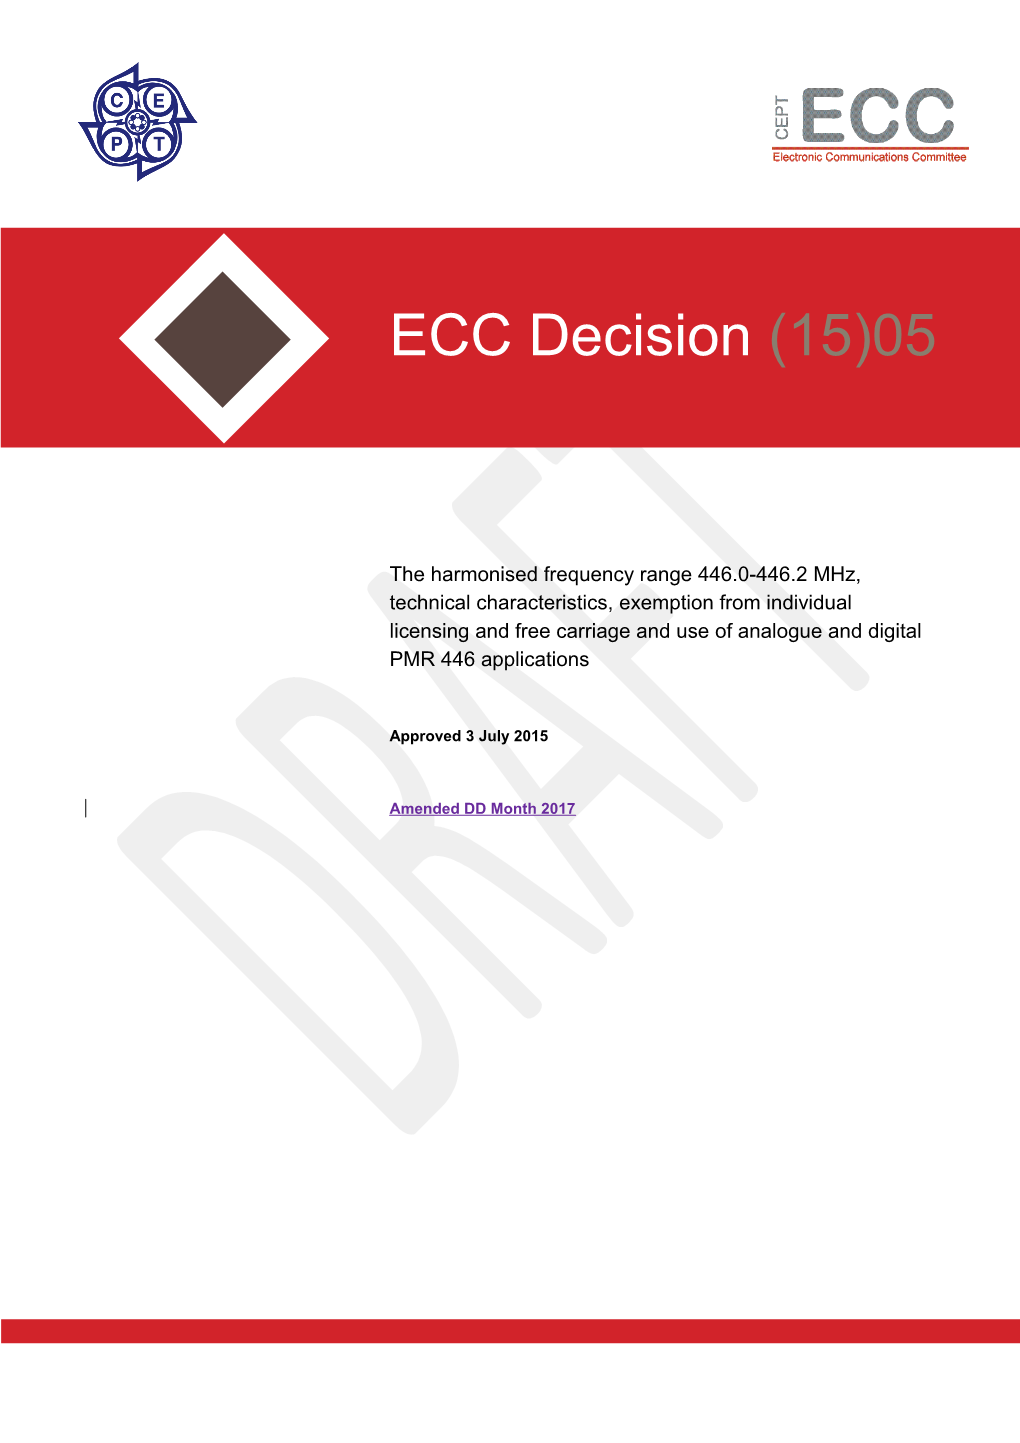 ECC Decision on PMR 446